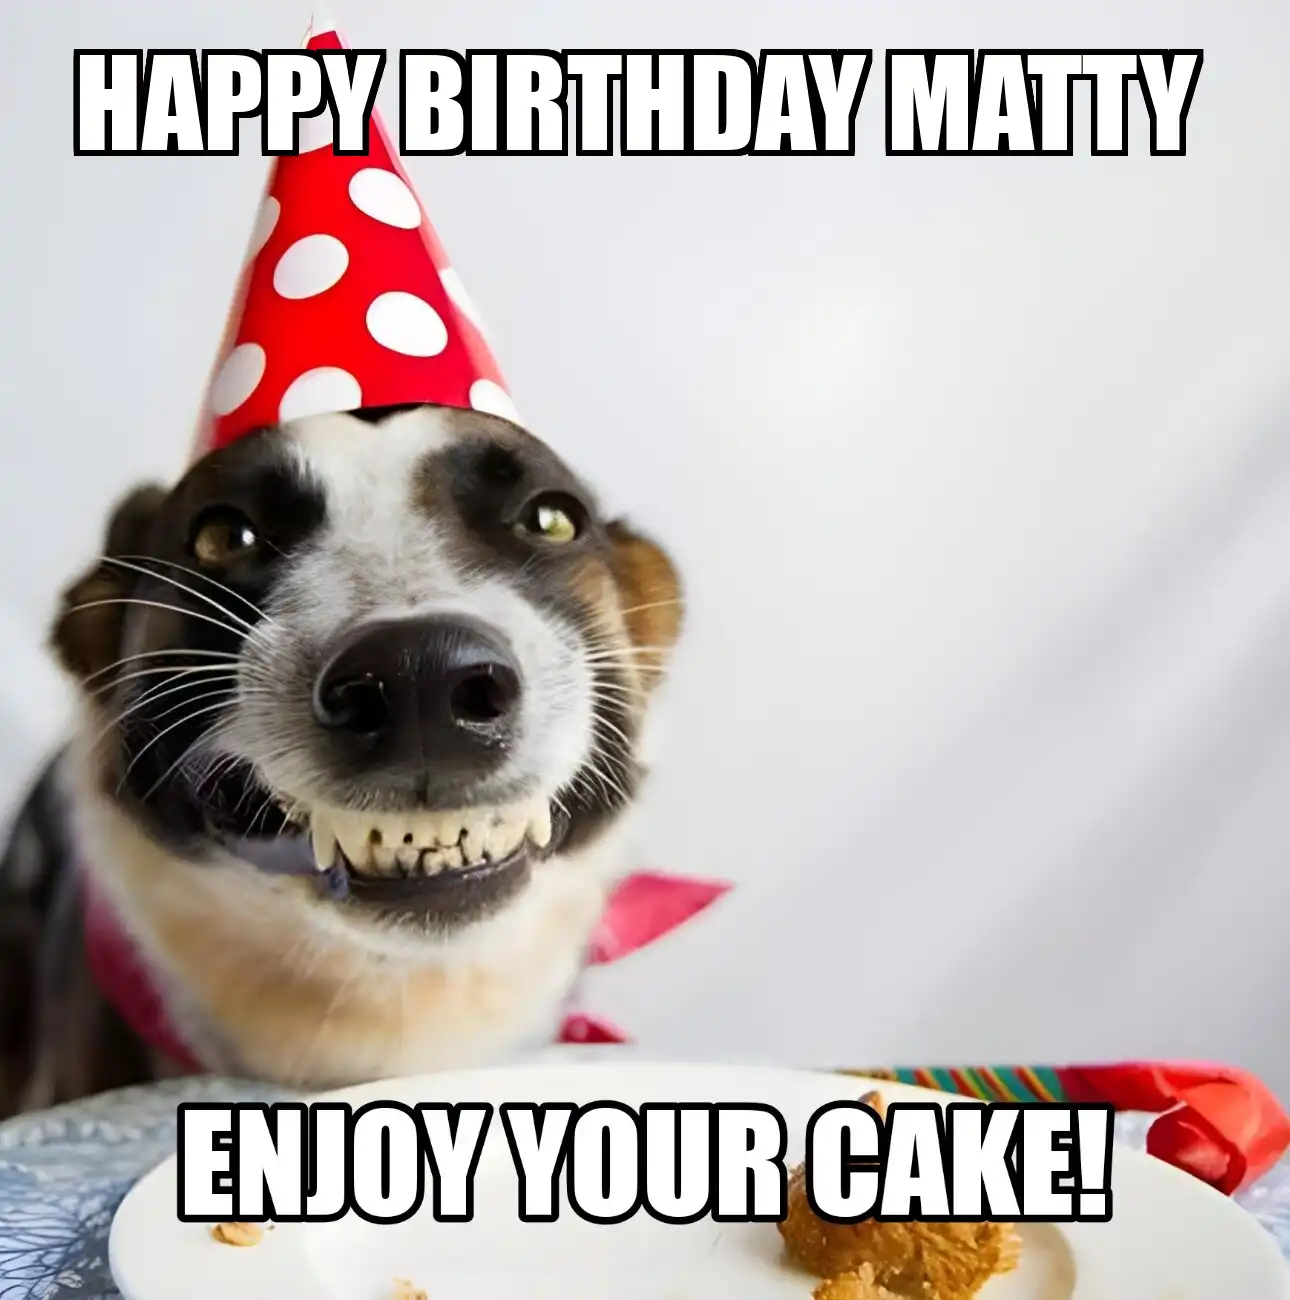 Happy Birthday Matty Enjoy Your Cake Dog Meme